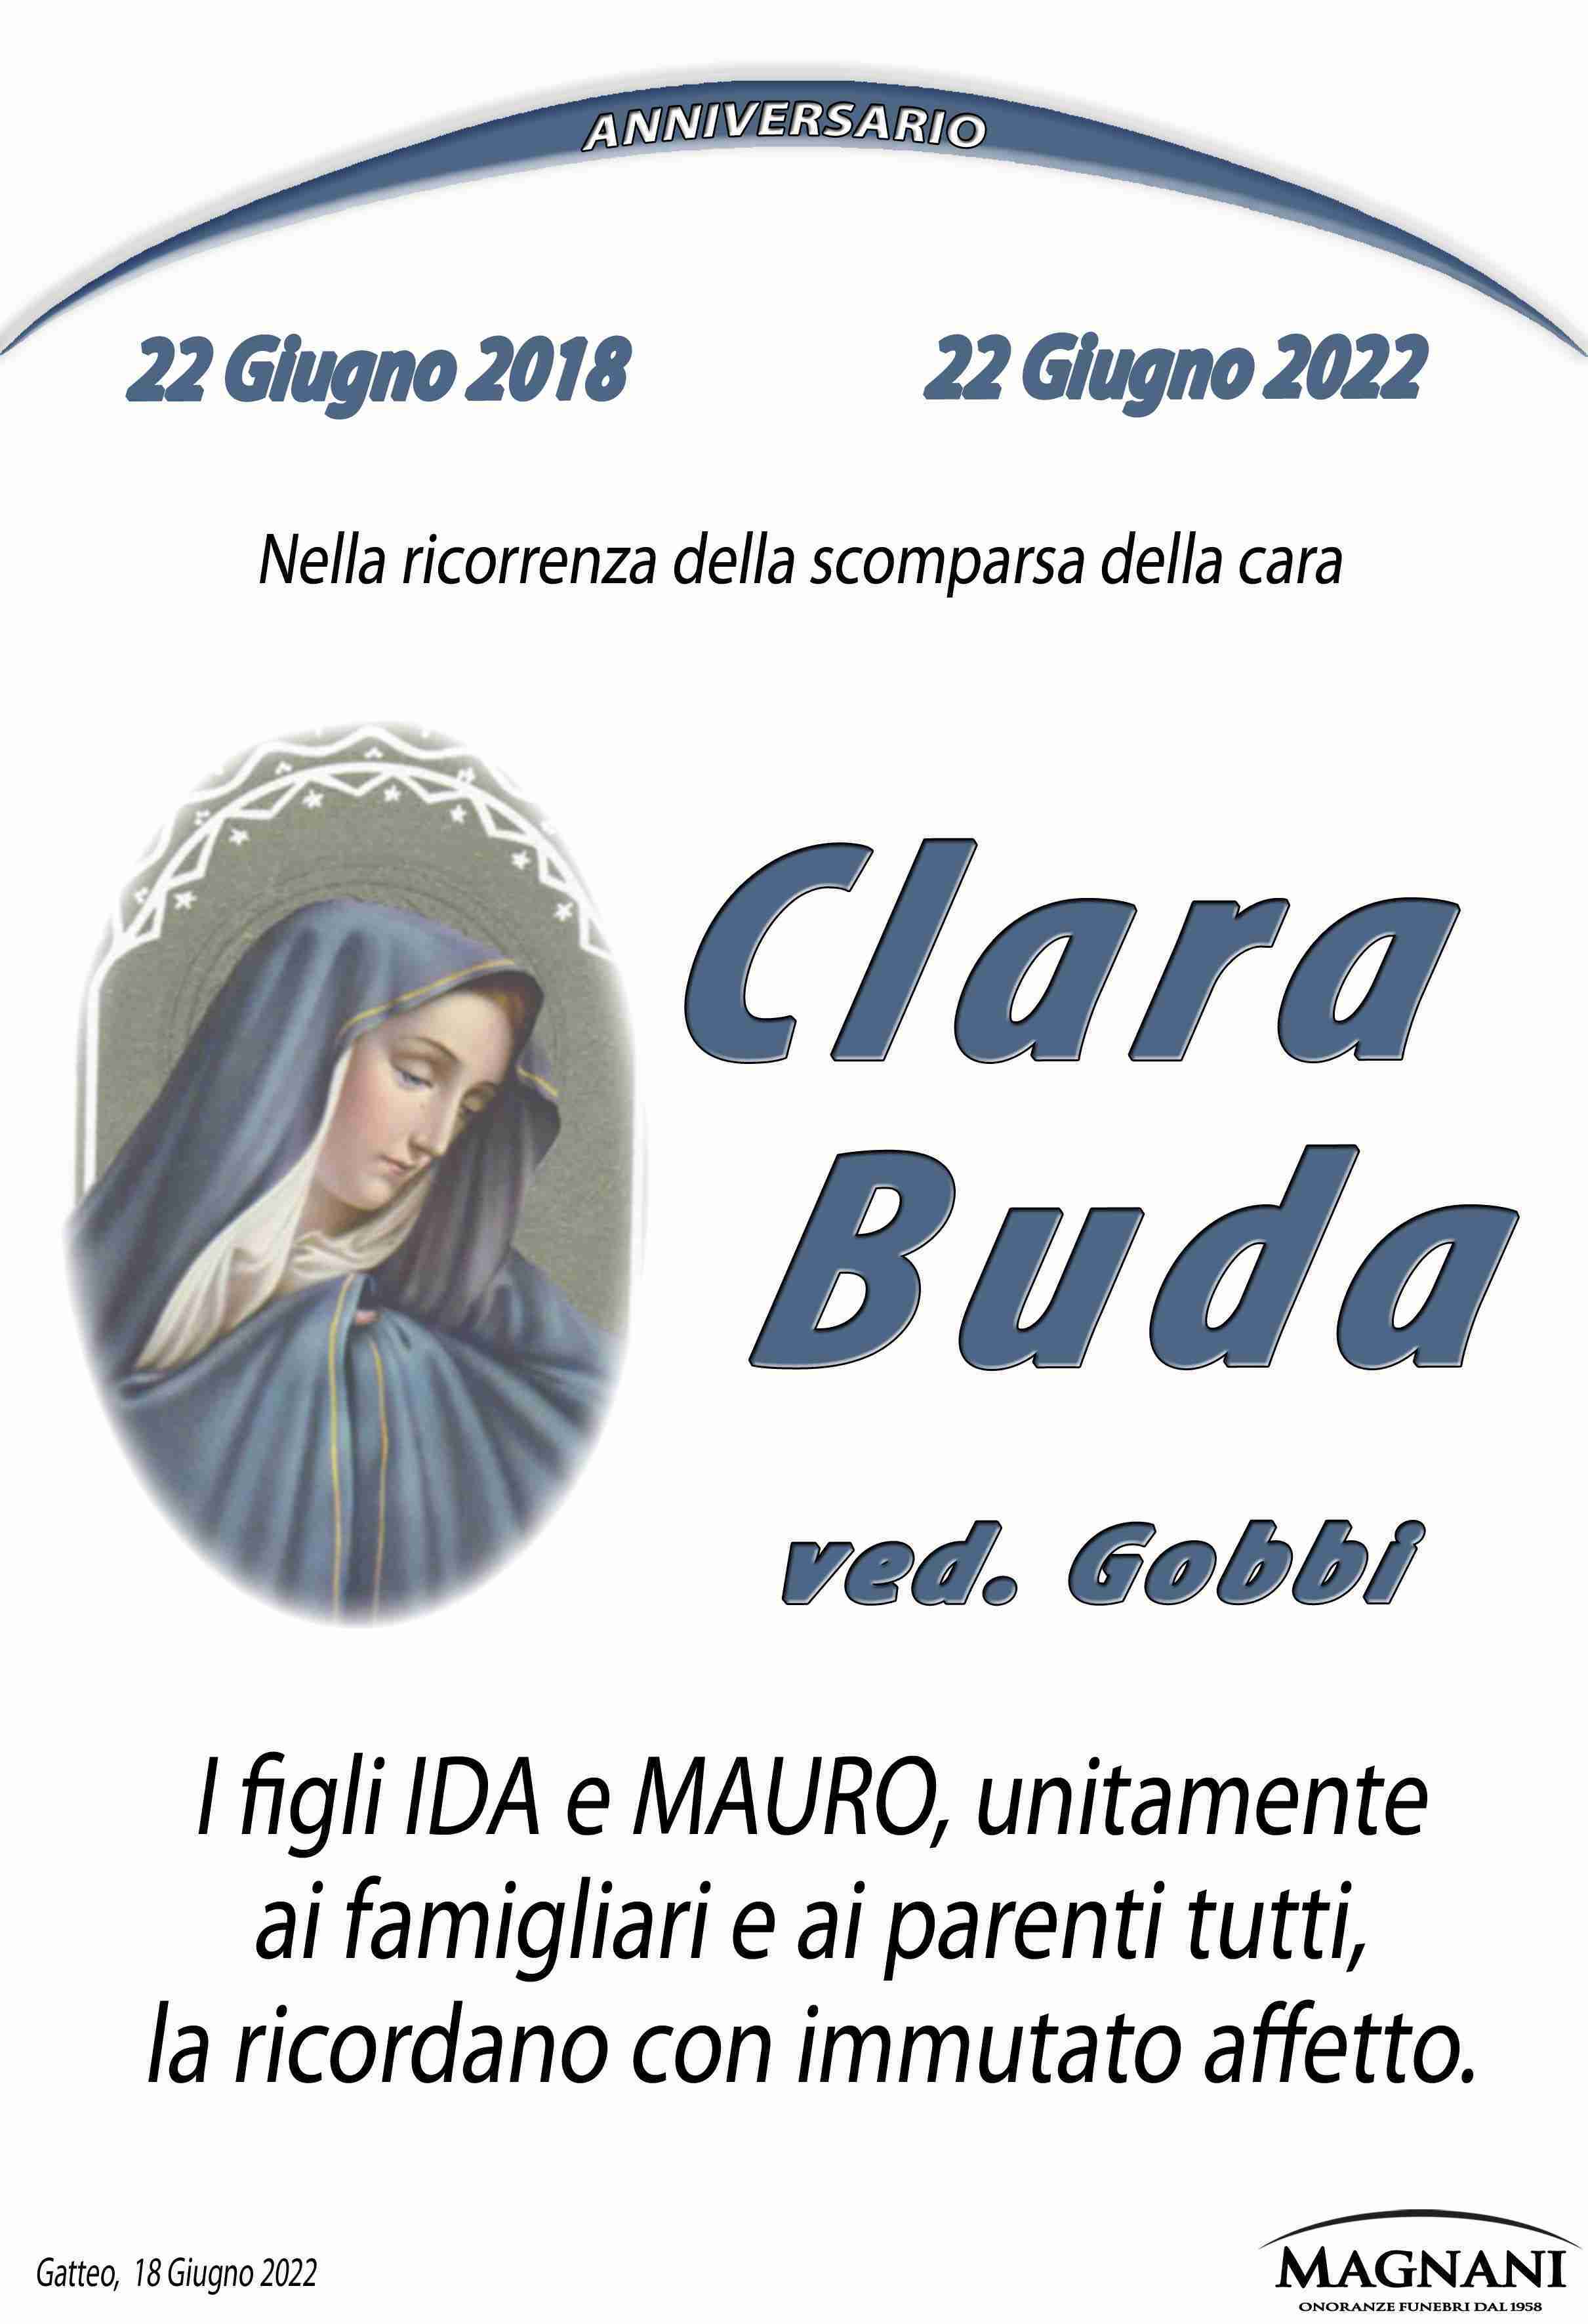 Clara Buda